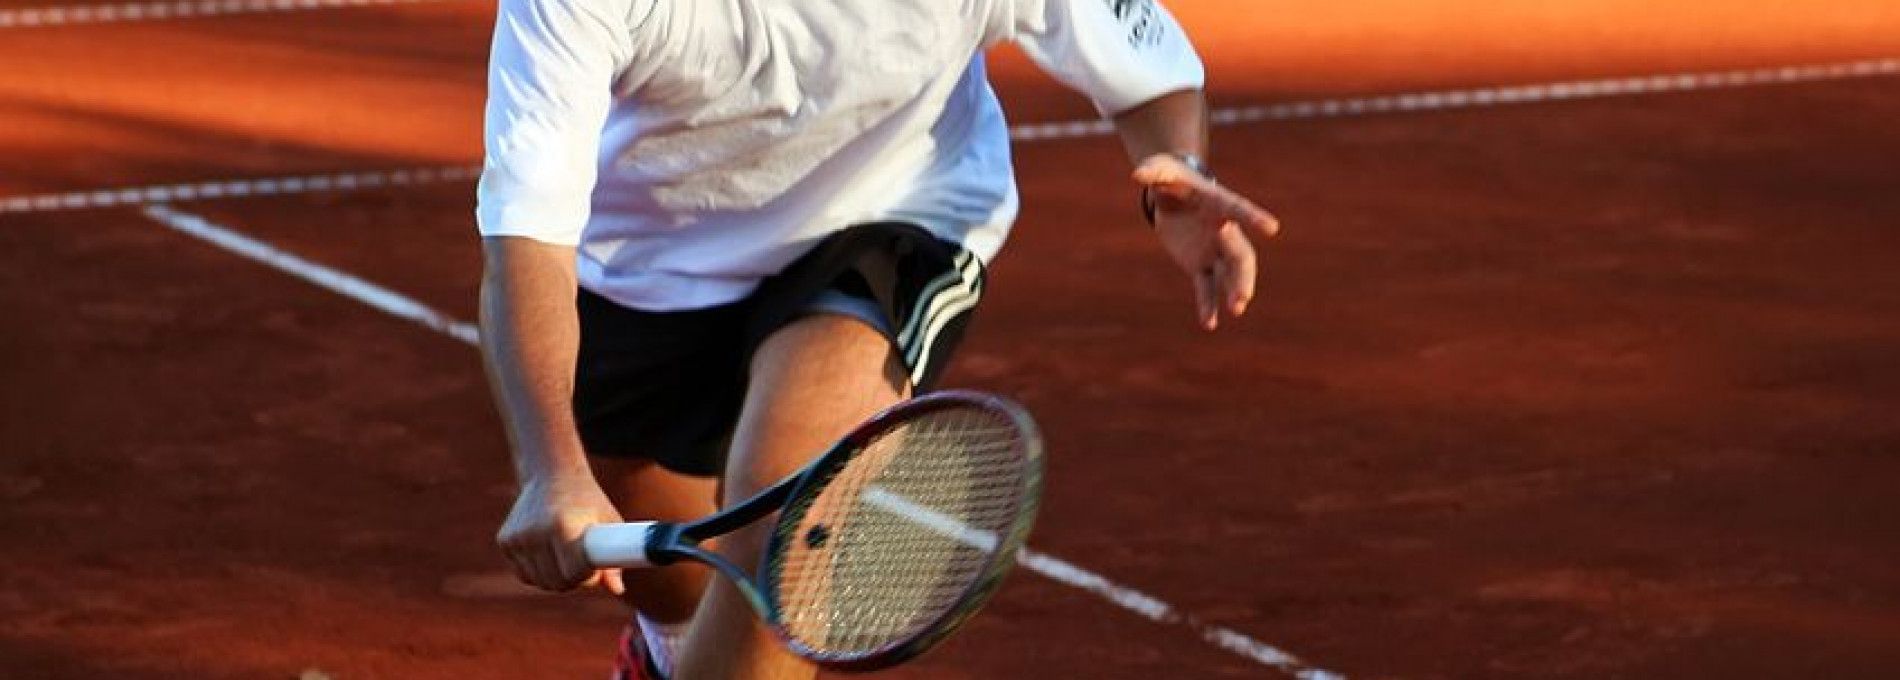 Tennis und Squash spielen - VVV Ameland